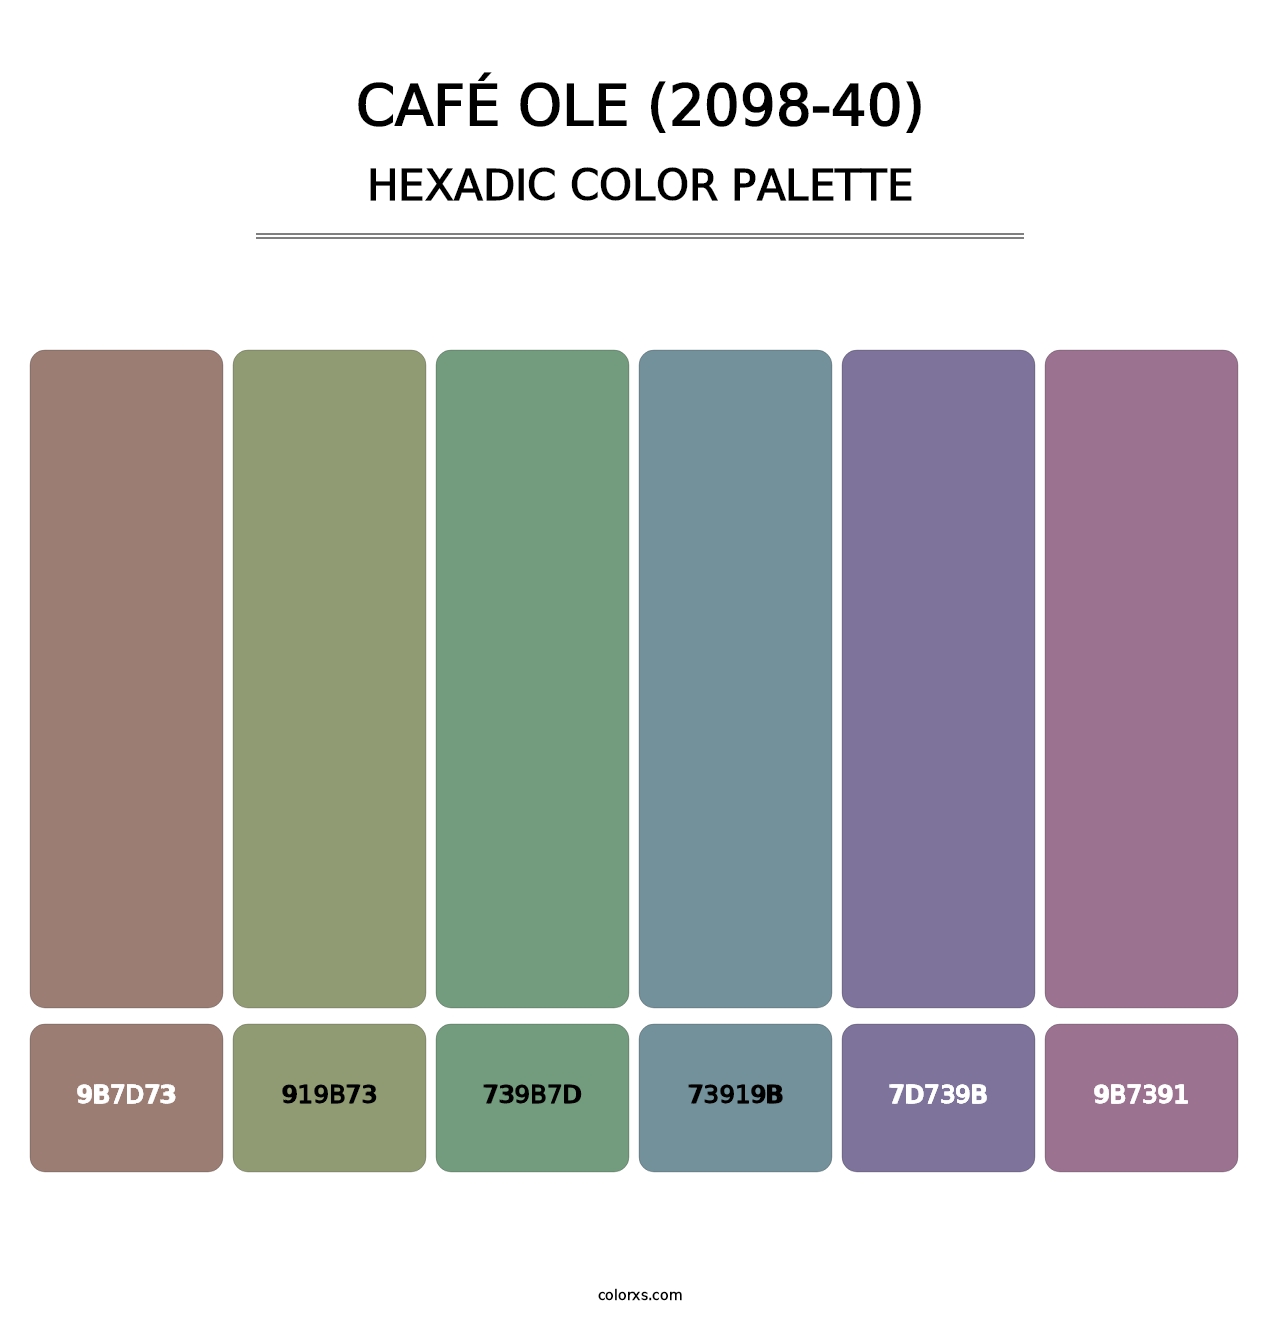 Café Ole (2098-40) - Hexadic Color Palette